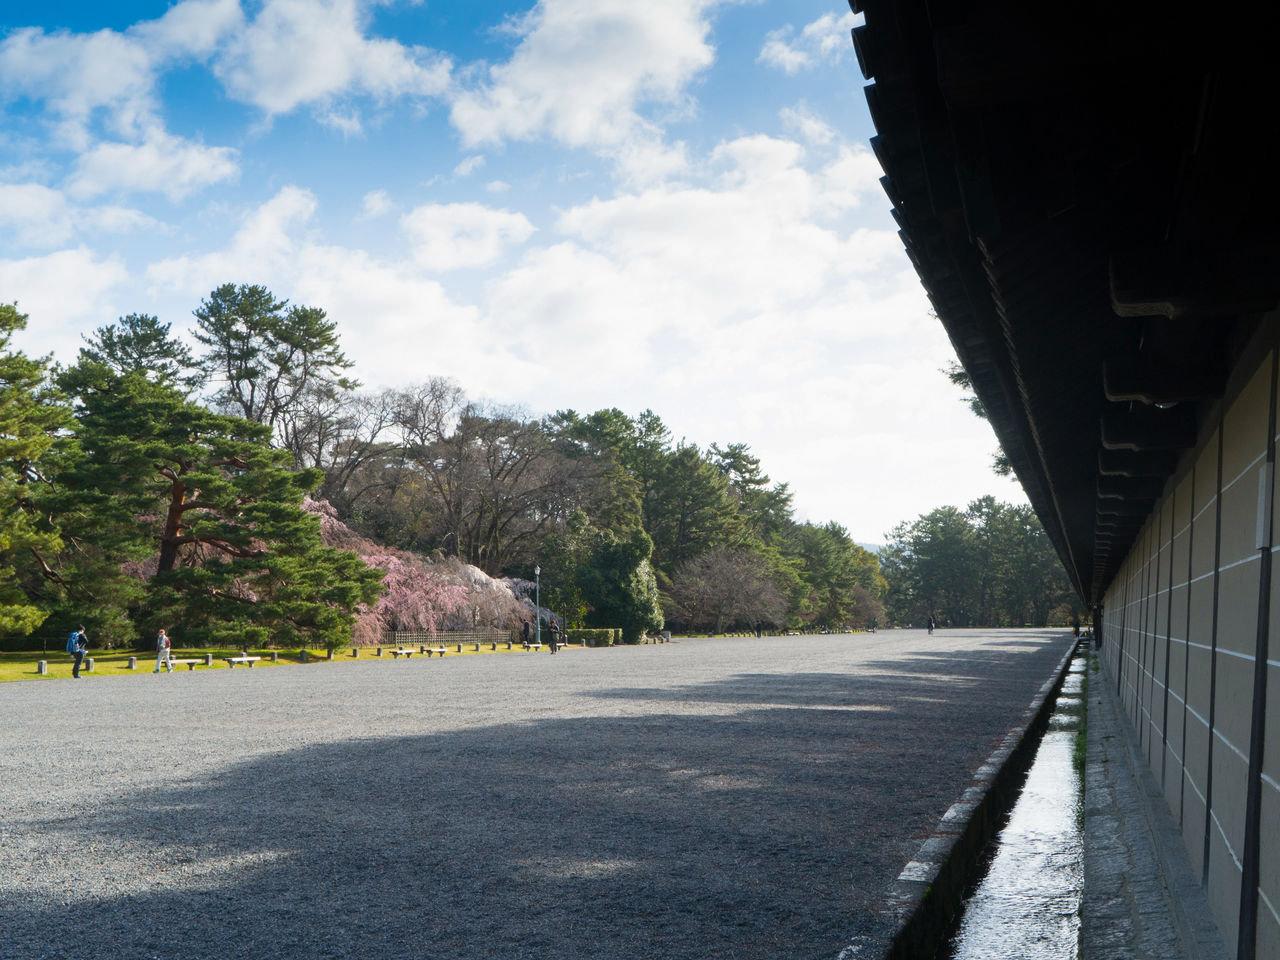 Маршрут от станции Киото до Киото Гёэн сравнительно ровный, его несложно проехать на велосипеде. По пути вы можете осмотреть объекты Всемирного наследия, такие как храм Ниси-Хонгандзи и замок Нидзё, а также остановиться в кафе у реки Камо